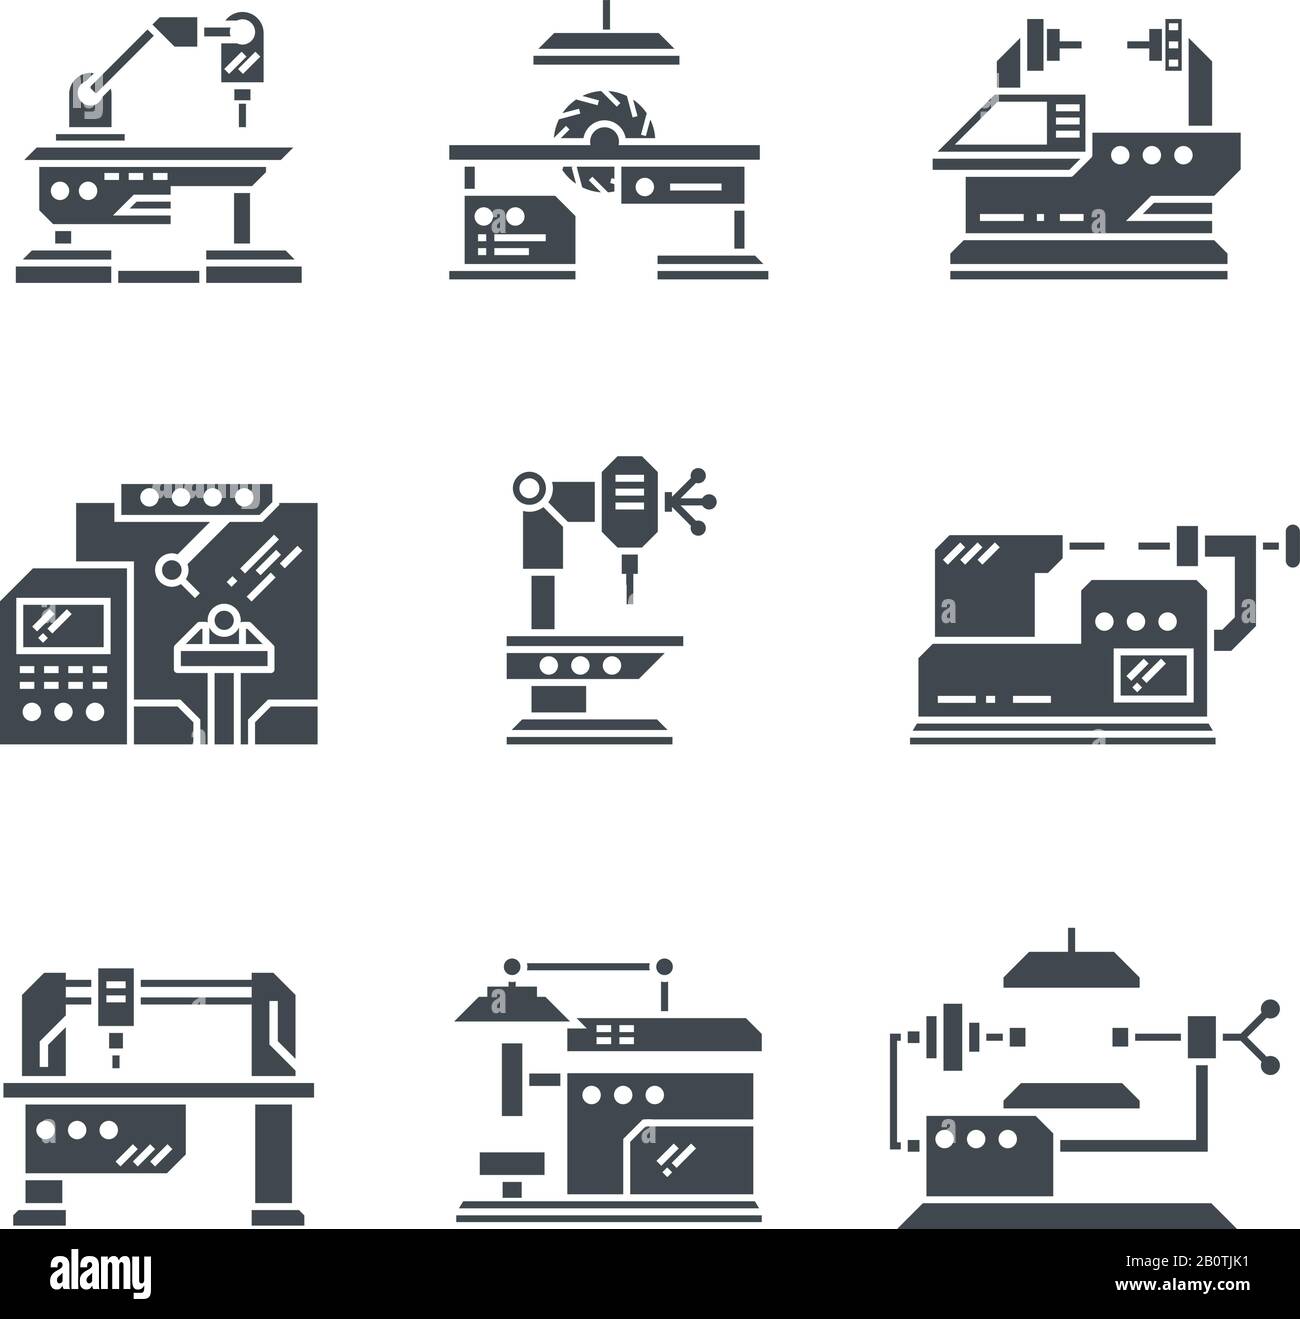 Vektorsymbole für Werkzeugmaschinen in der Stahlindustrie. Werkzeugmaschinen industrielle Metallbearbeitung Abbildung Stock Vektor